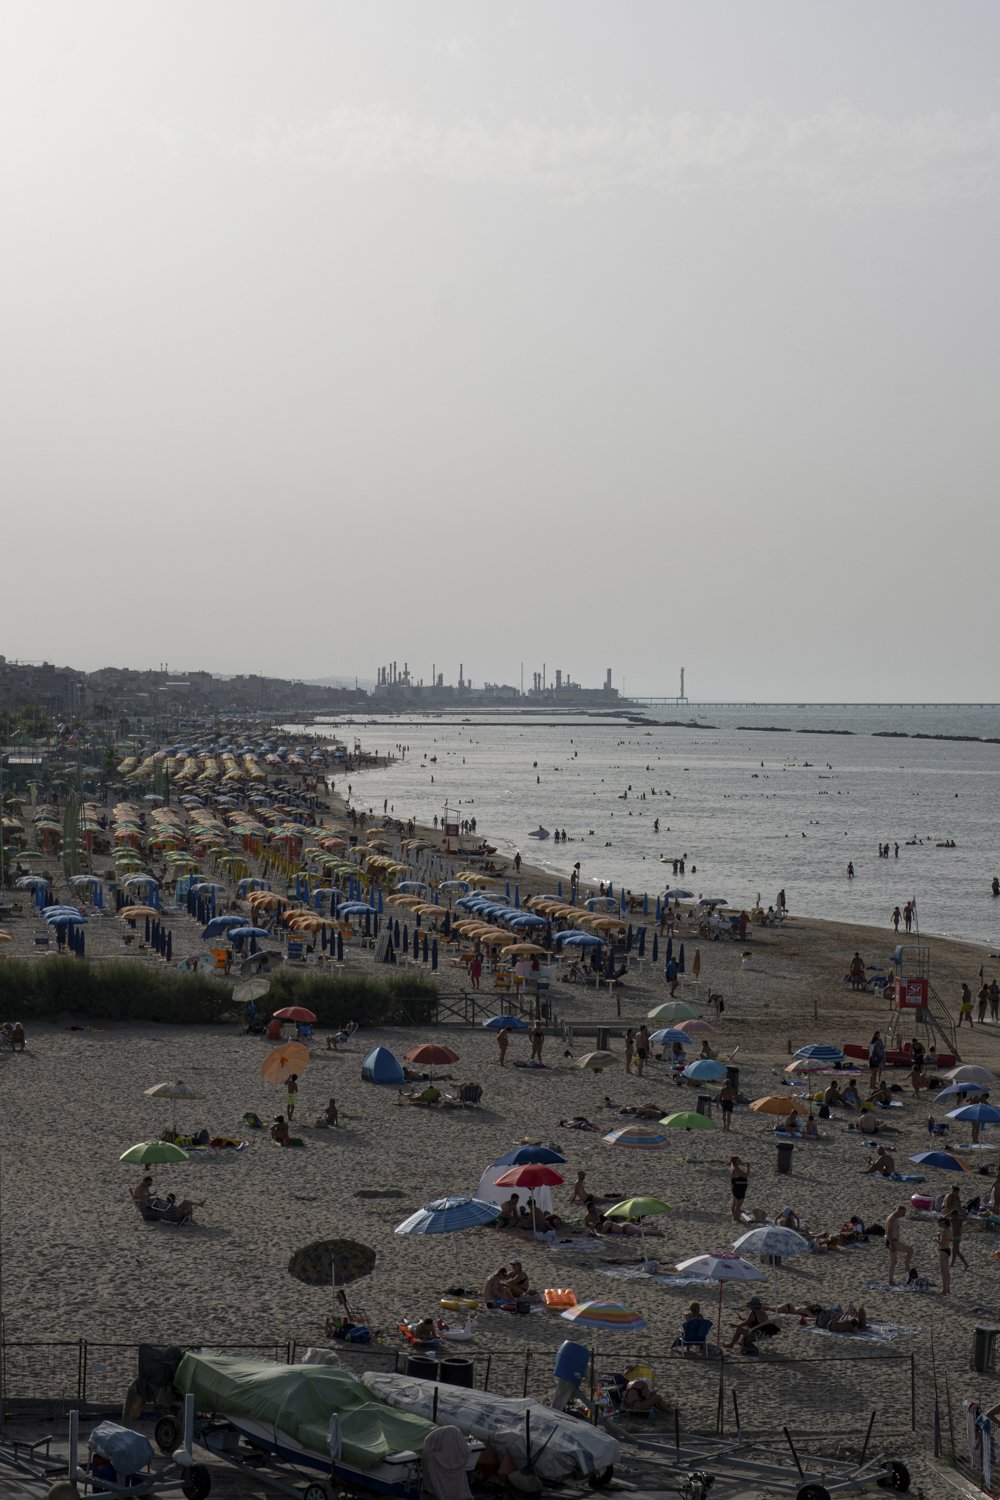  La spiaggia di Falconara Marittima vista dalla località di Torrette (Ancona), sullo sfondo la raffineria Api dal lato sud. Torrette (Ancona), 2023. 